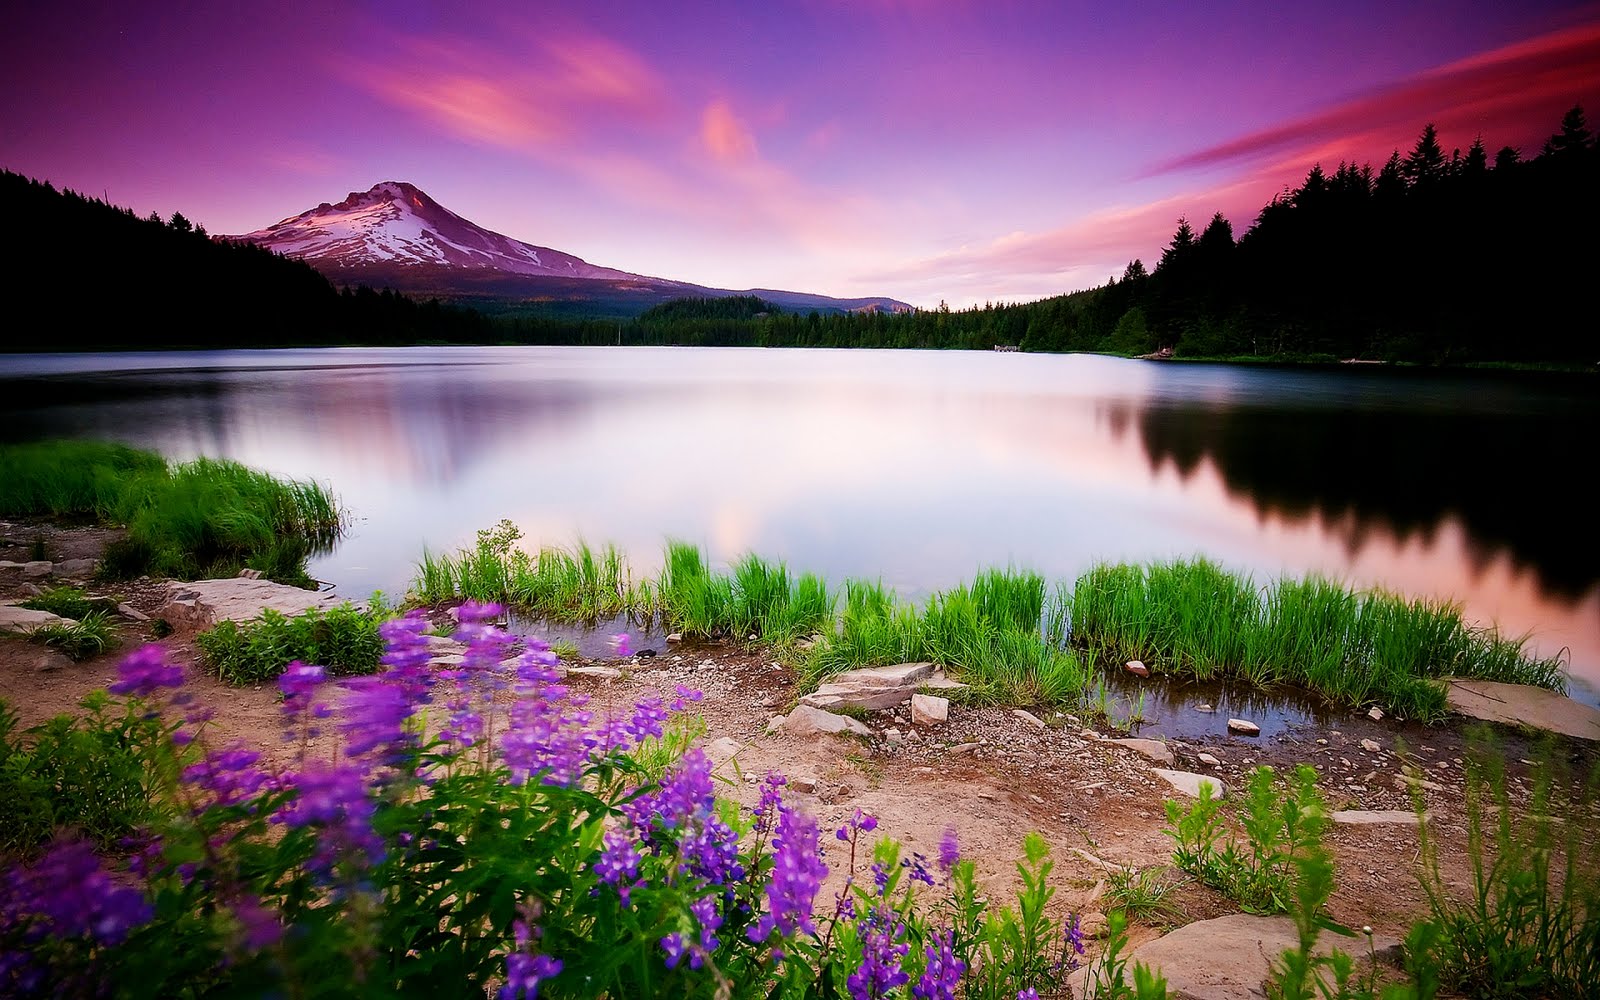 Paisajes Naturales- Montaña nevada junto al lago con flores violeta